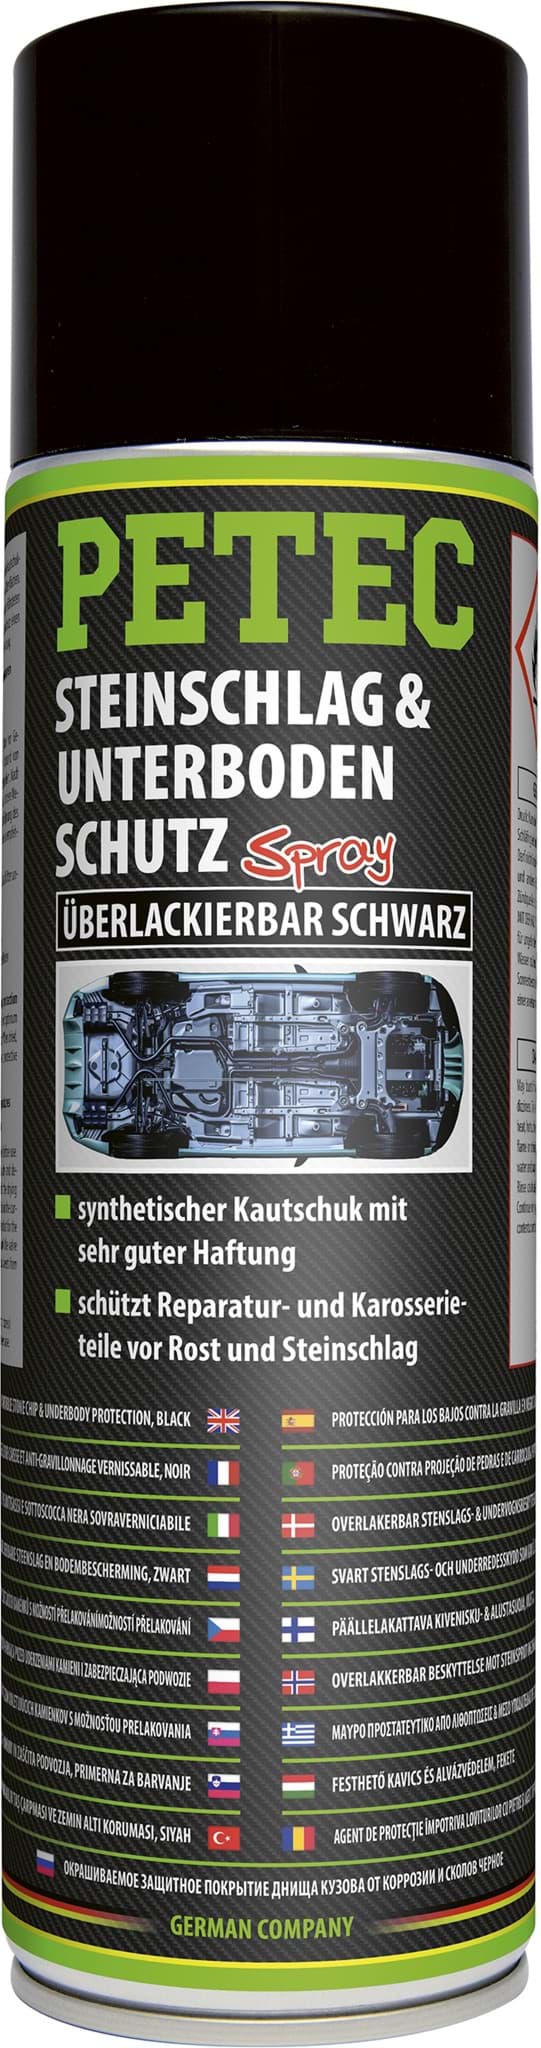 Petec Steinschlagschutz Unterbodenschutz Spray 500ml UBS schwarz überlackierbar resmi